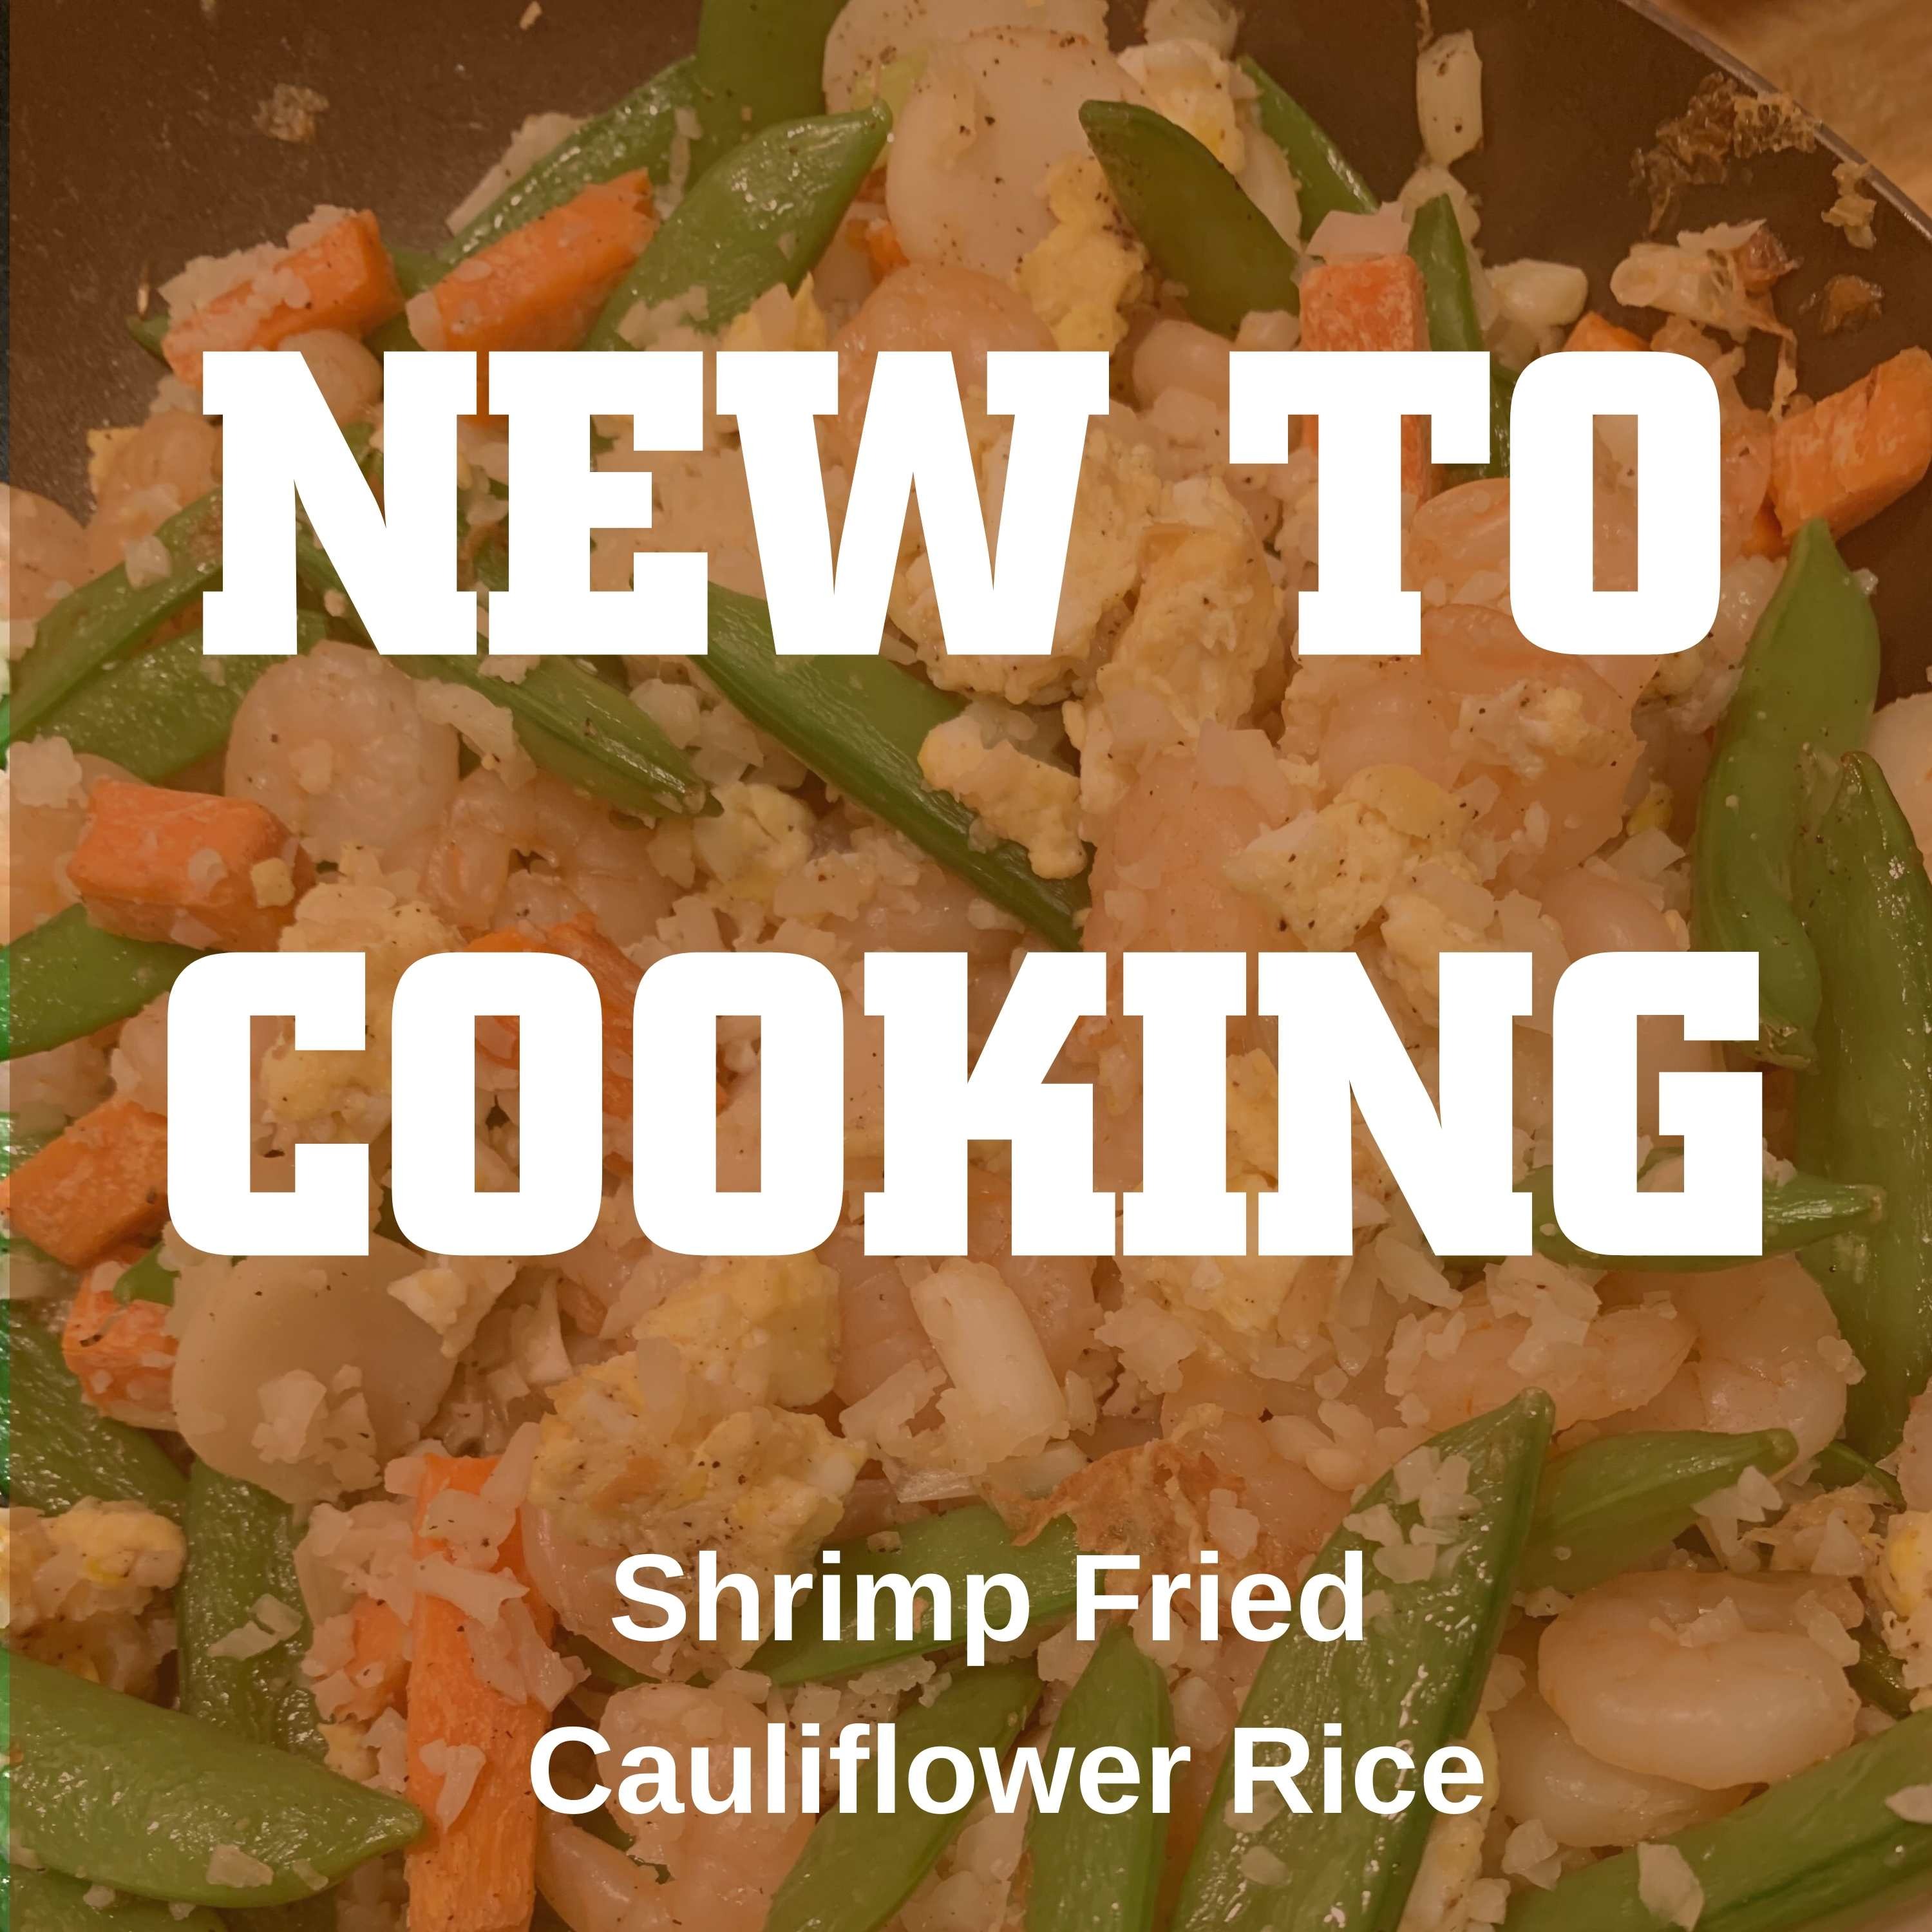 Shrimp Fried Cauliflower Rice Image